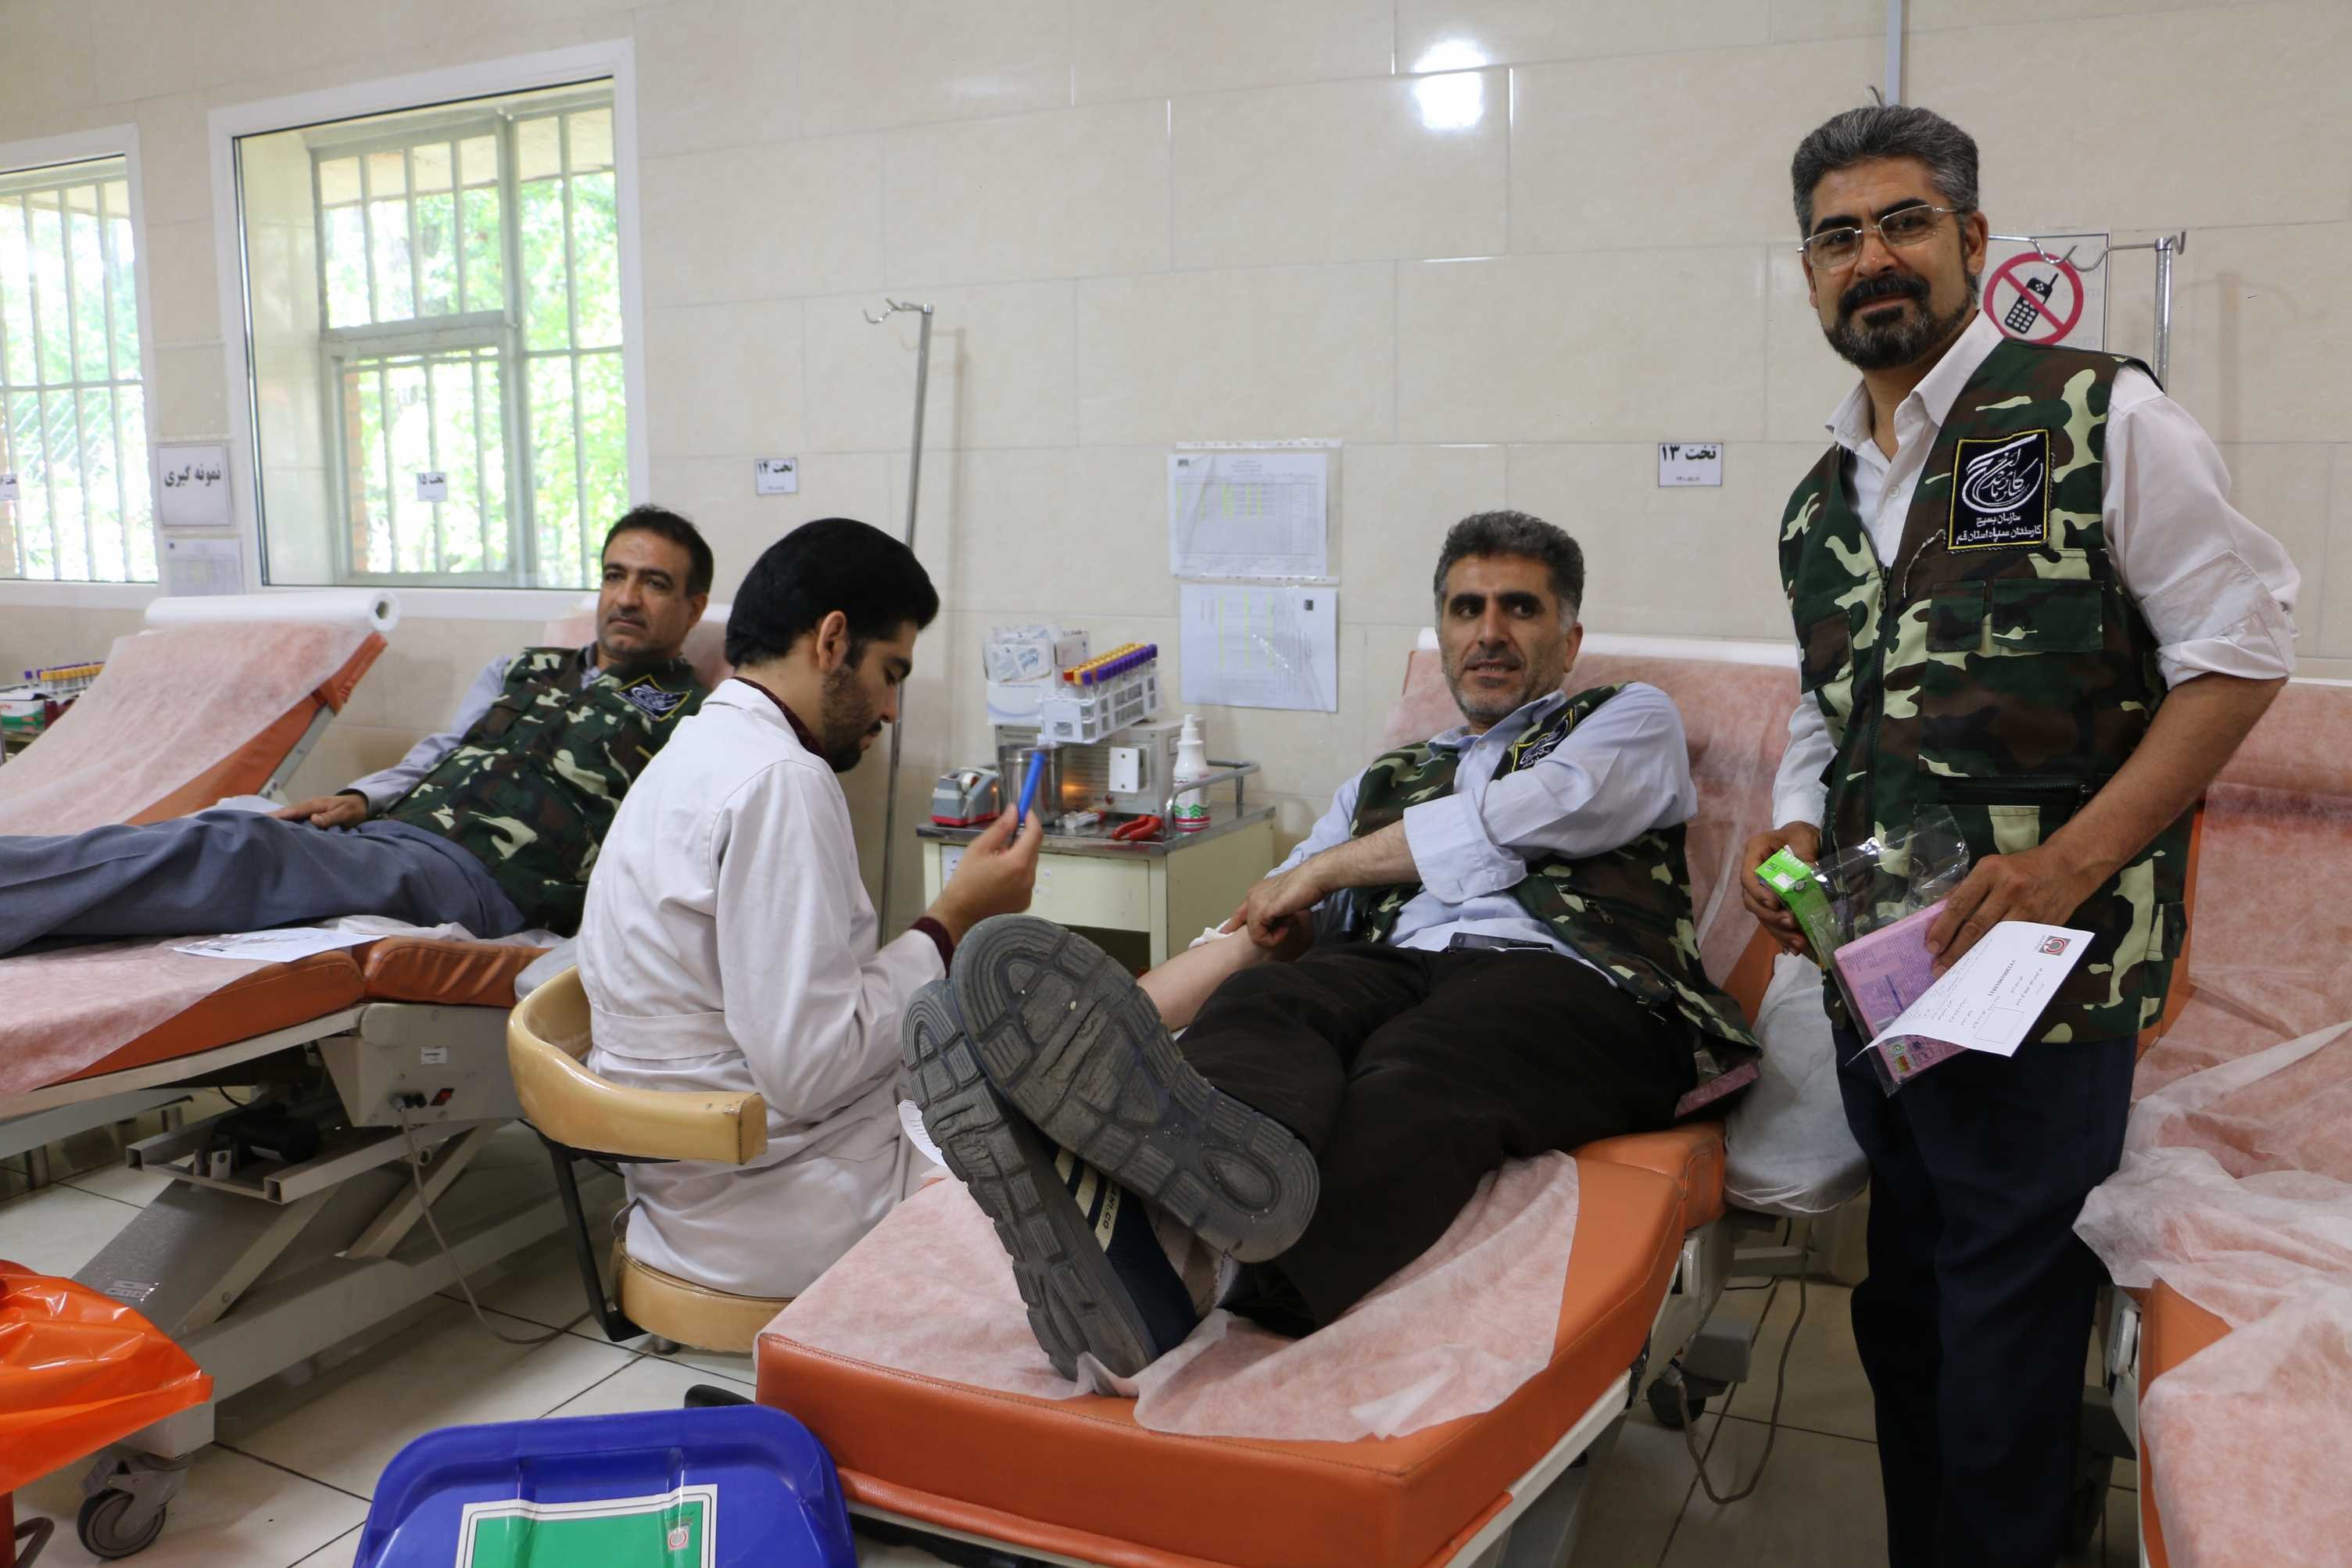 اهدا خون جمعی  از اعضاء سازمان جهاد کشاورزی استان قم در هفته جهاد کشاورزی